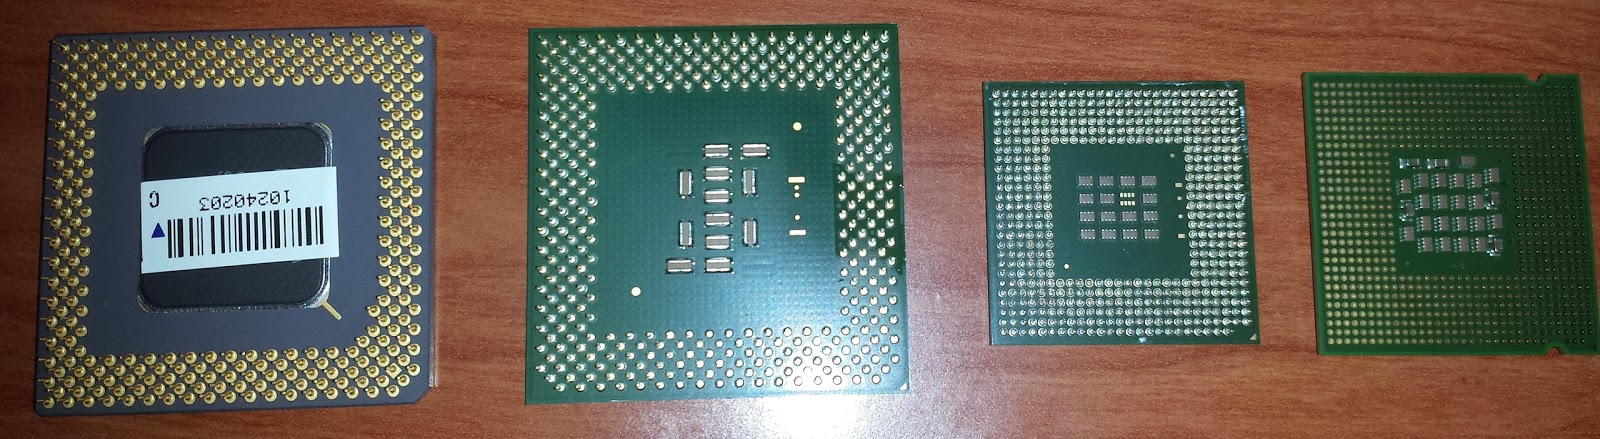 Procesadores Pentium